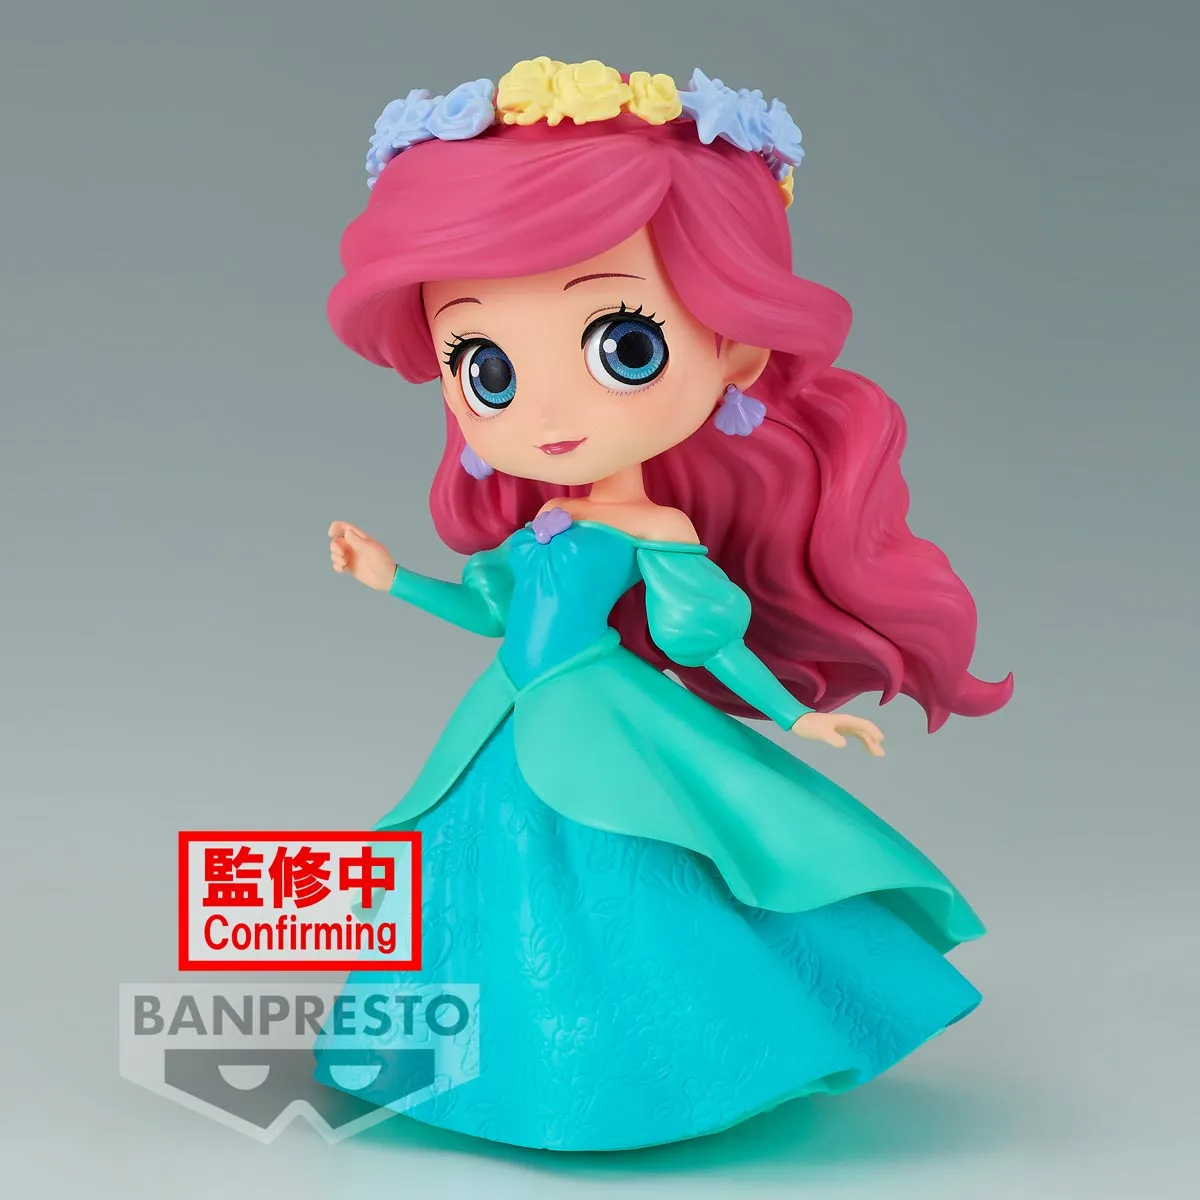 Pre-Order Flower Style - Ariel (ver. B) "Disney Characters"